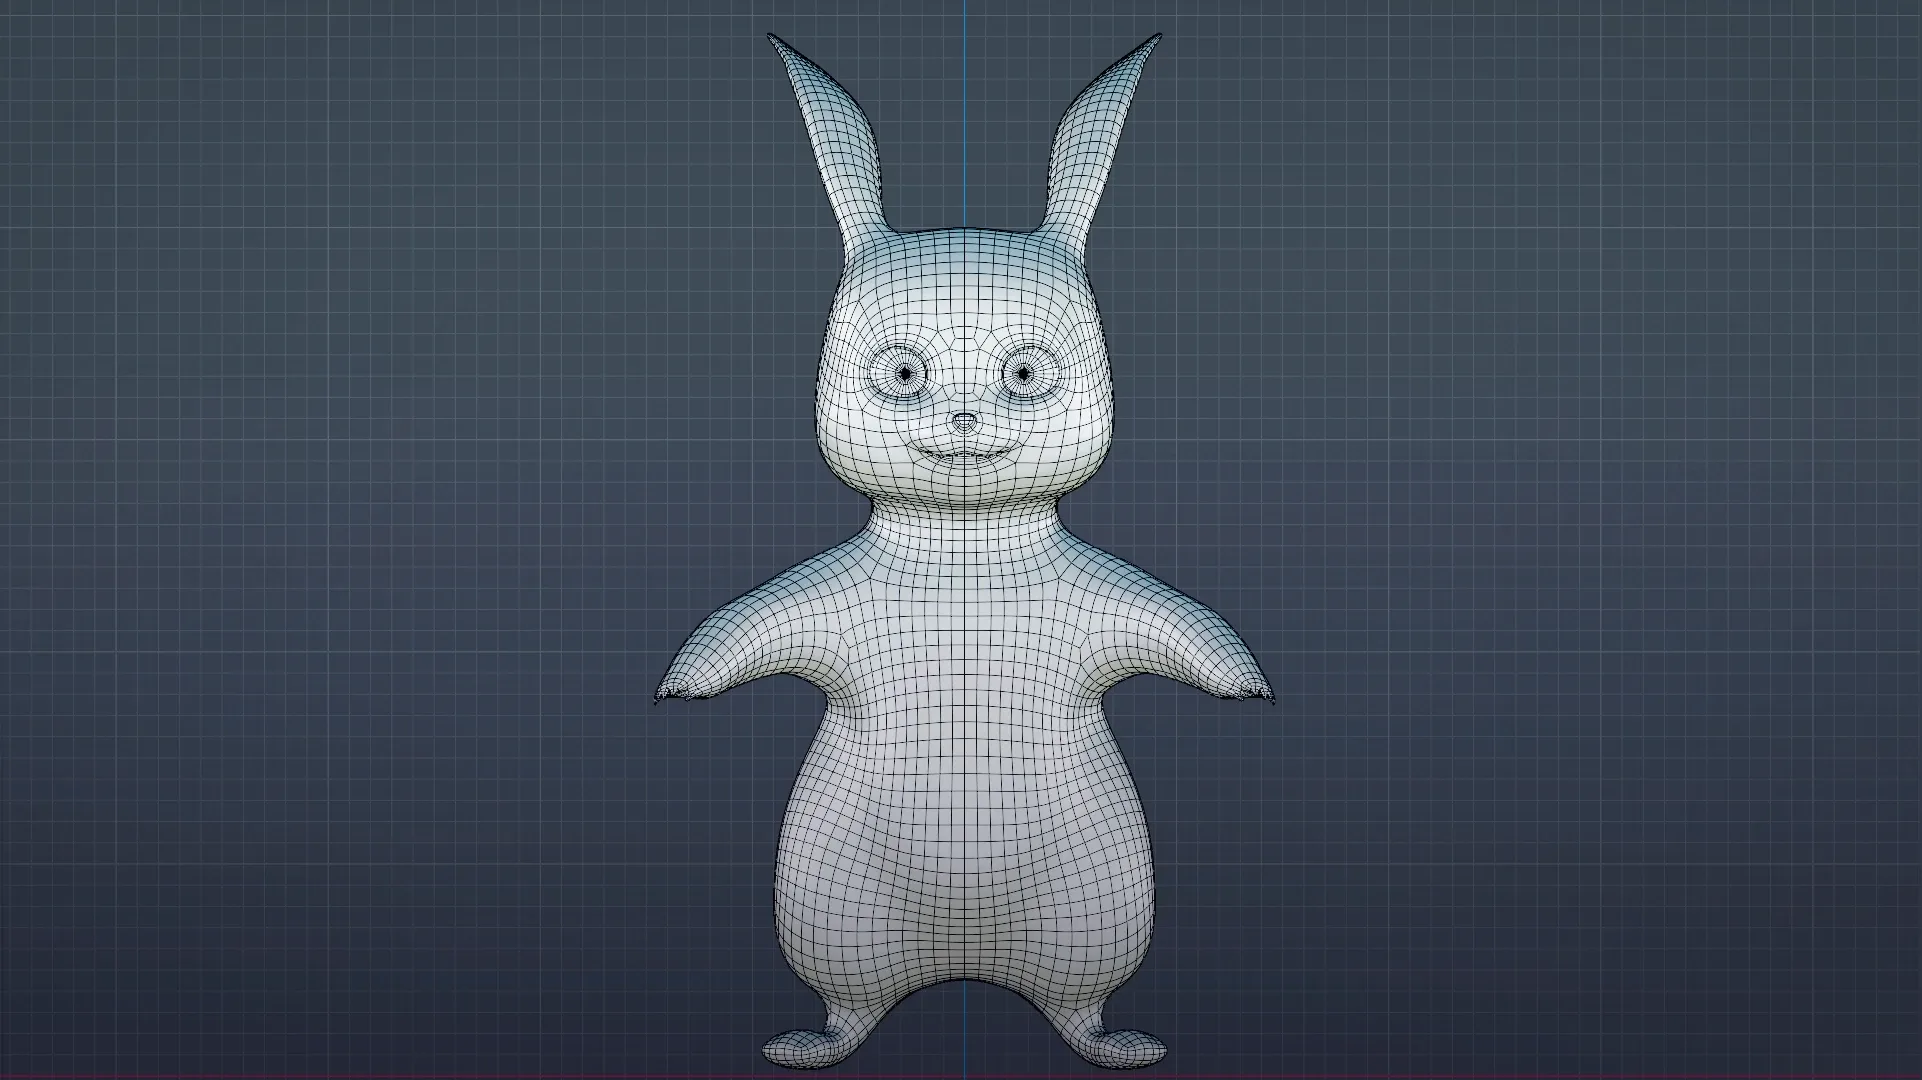 Pikachu - Pokemon Rigged 3d-model for Blender